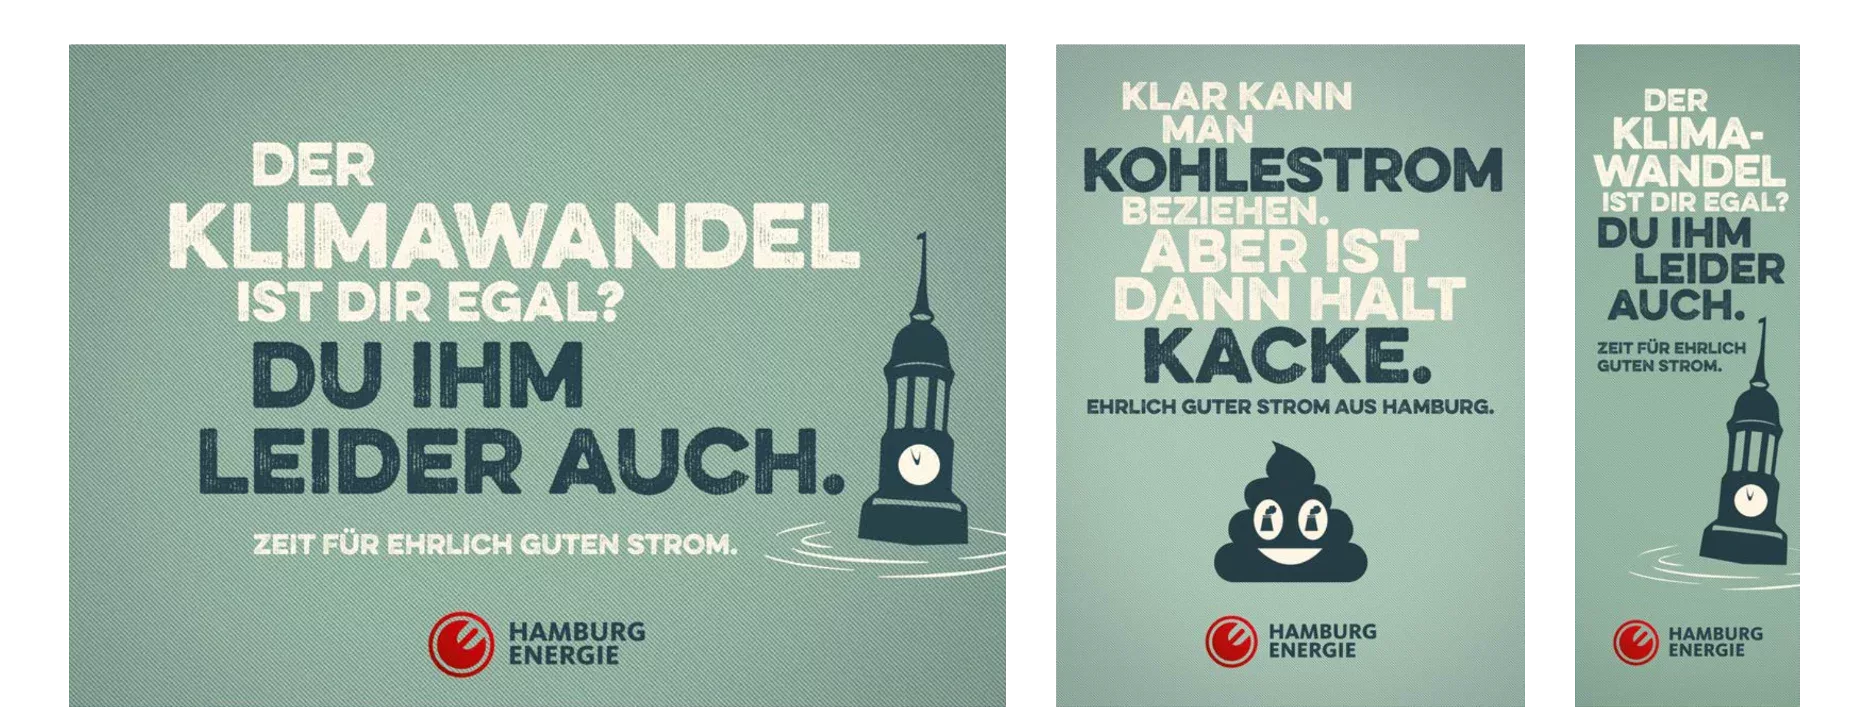 Kampagnenmotive. Illustration des des Hamburger Michel, der im Wasser versinkt. Der Klimawandel ist Dir egal? Du ihm leider auch. Für ehrlich guten Strom: Hamburg Energie.